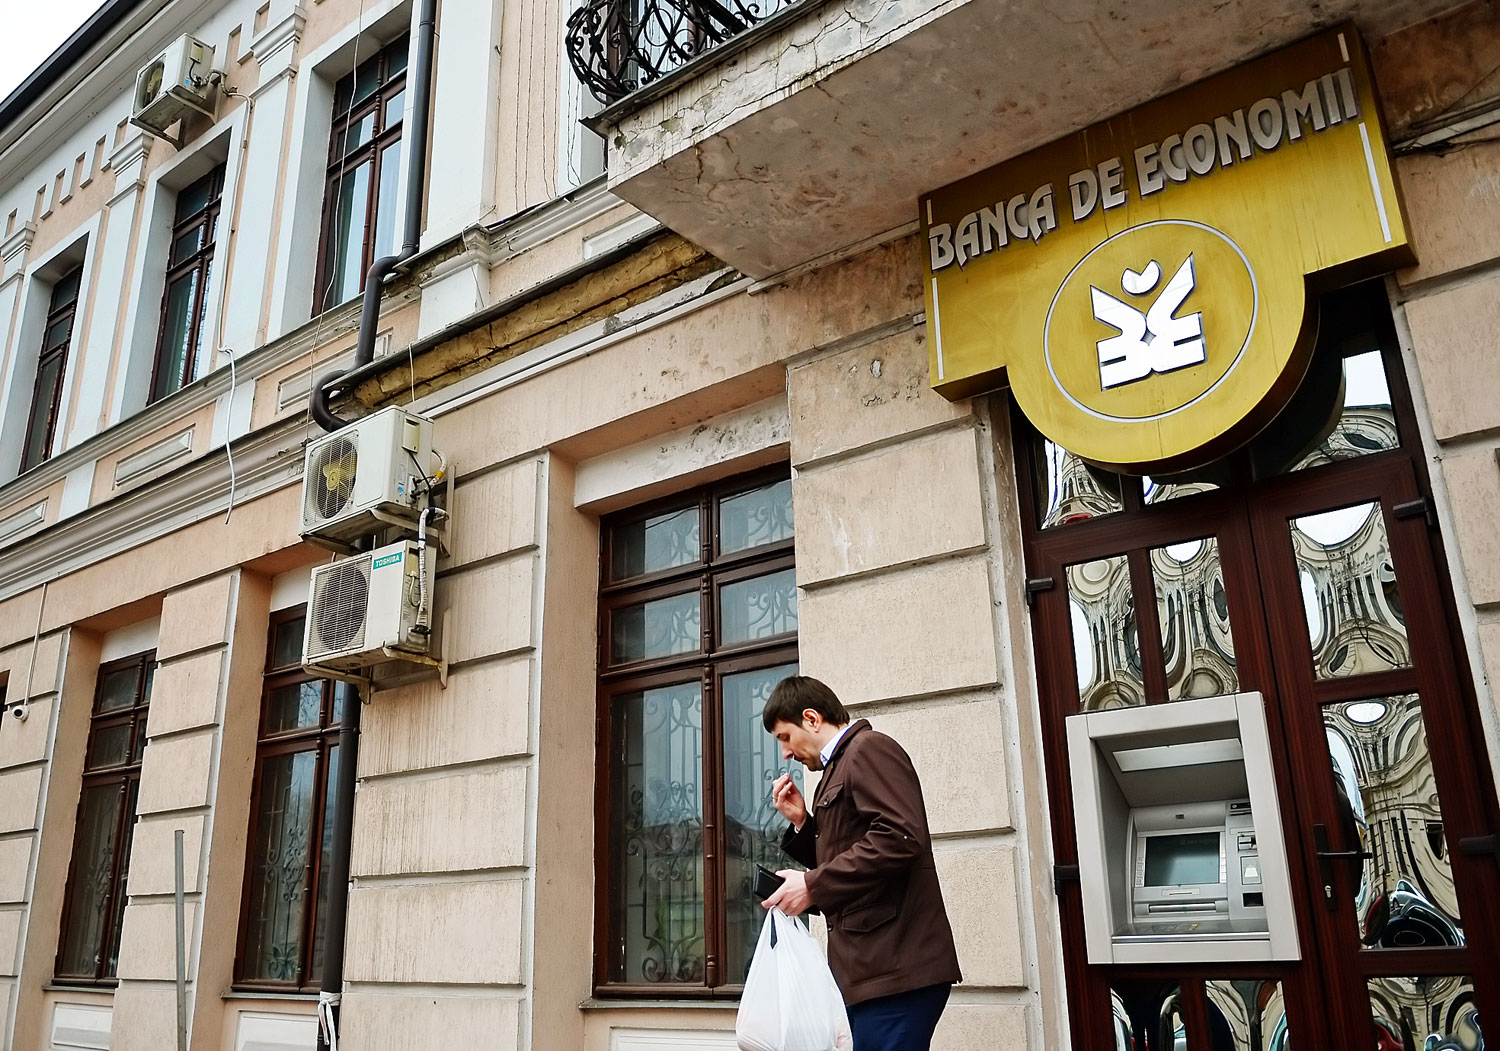 A botrányban érintett egyik bank, a Banca de Economii fiókja Chisinauban